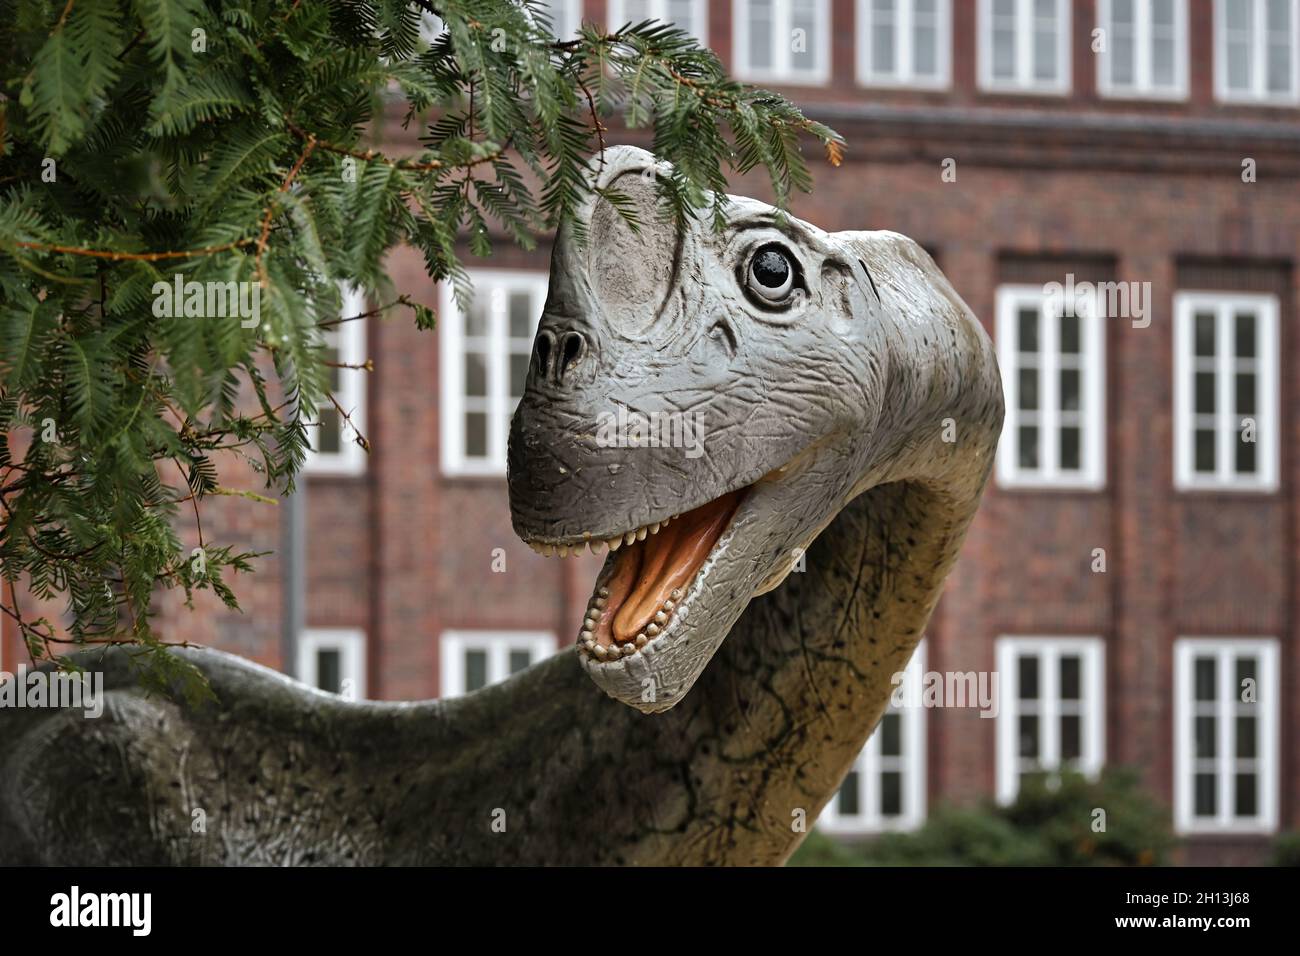 Sculpture de dinosaure devant le Musée national d'histoire naturelle de Braunschweig, Allemagne.Musée scientifique de zoologie, fondé en 1754. Banque D'Images